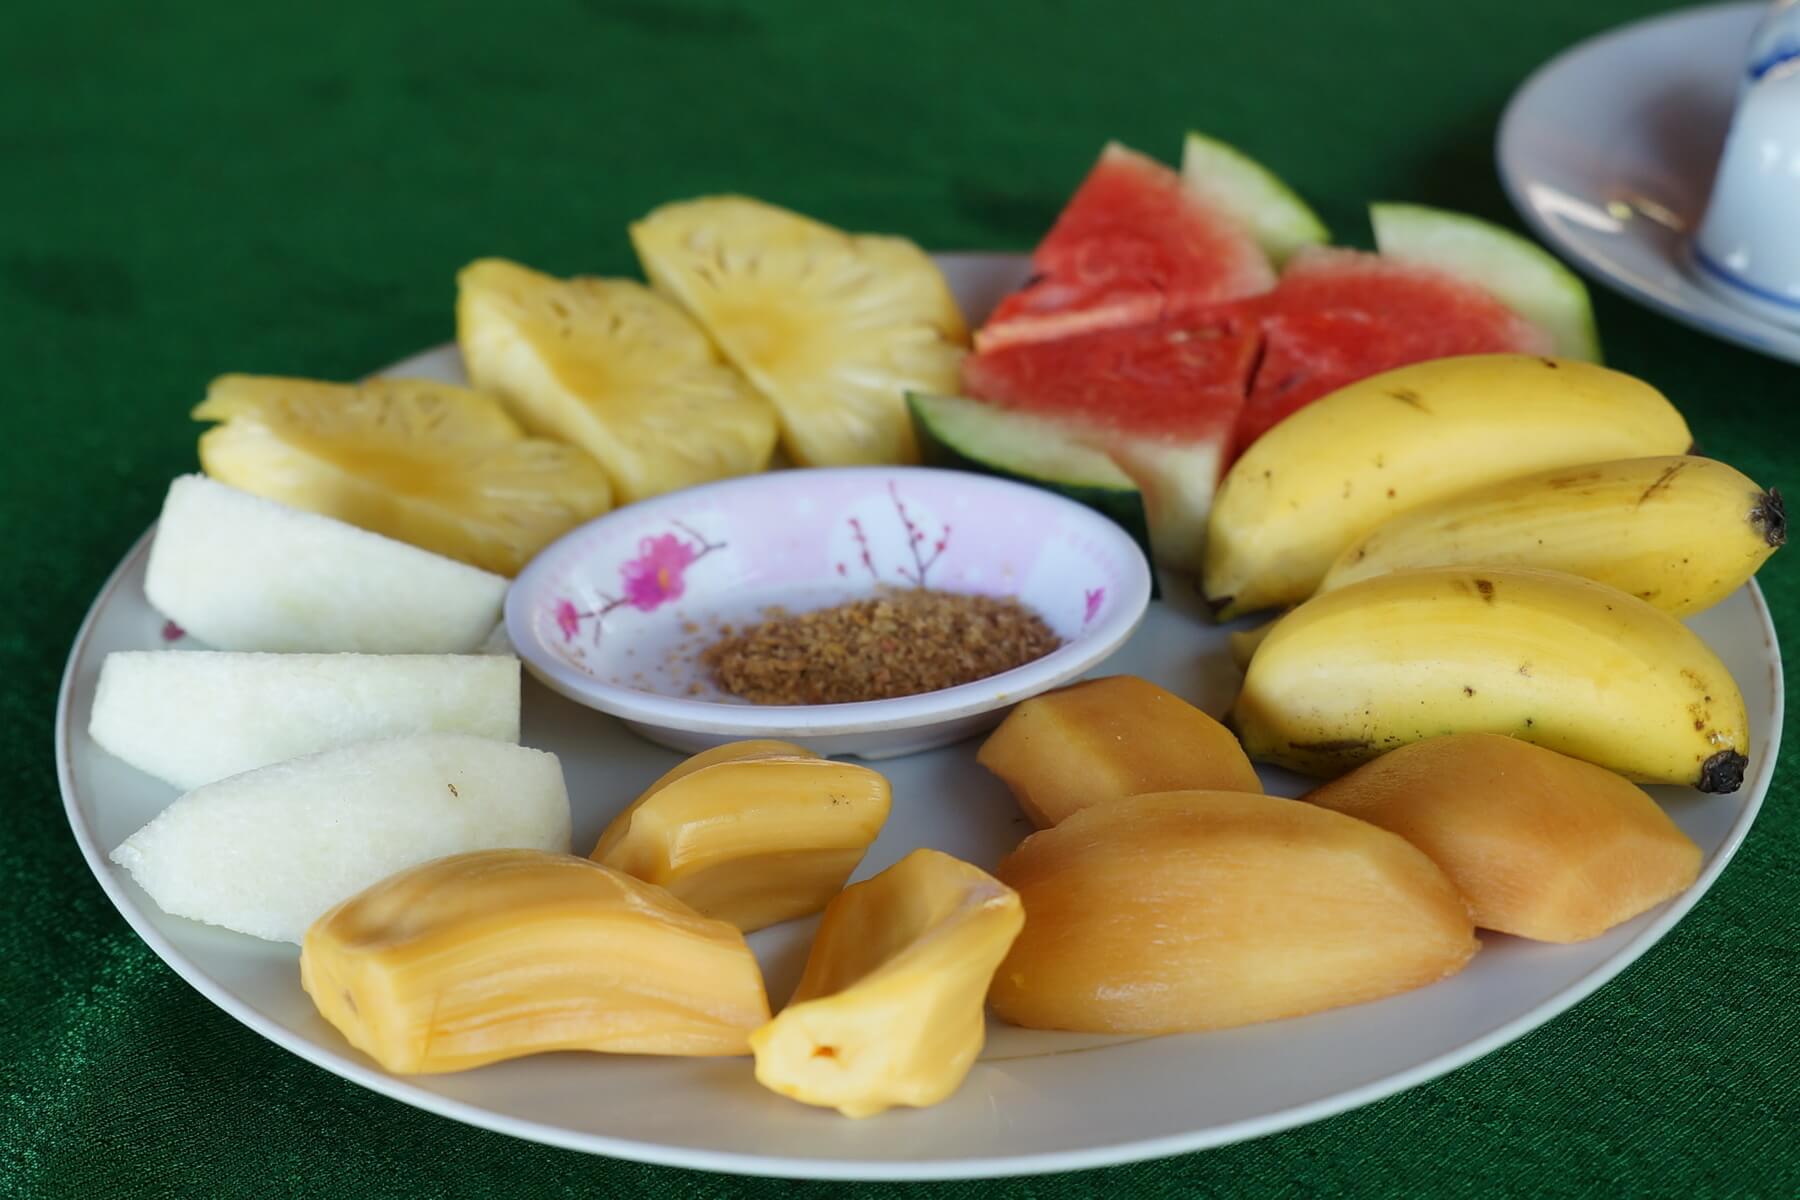 Früchteteller zum TET Festival in Vietnam